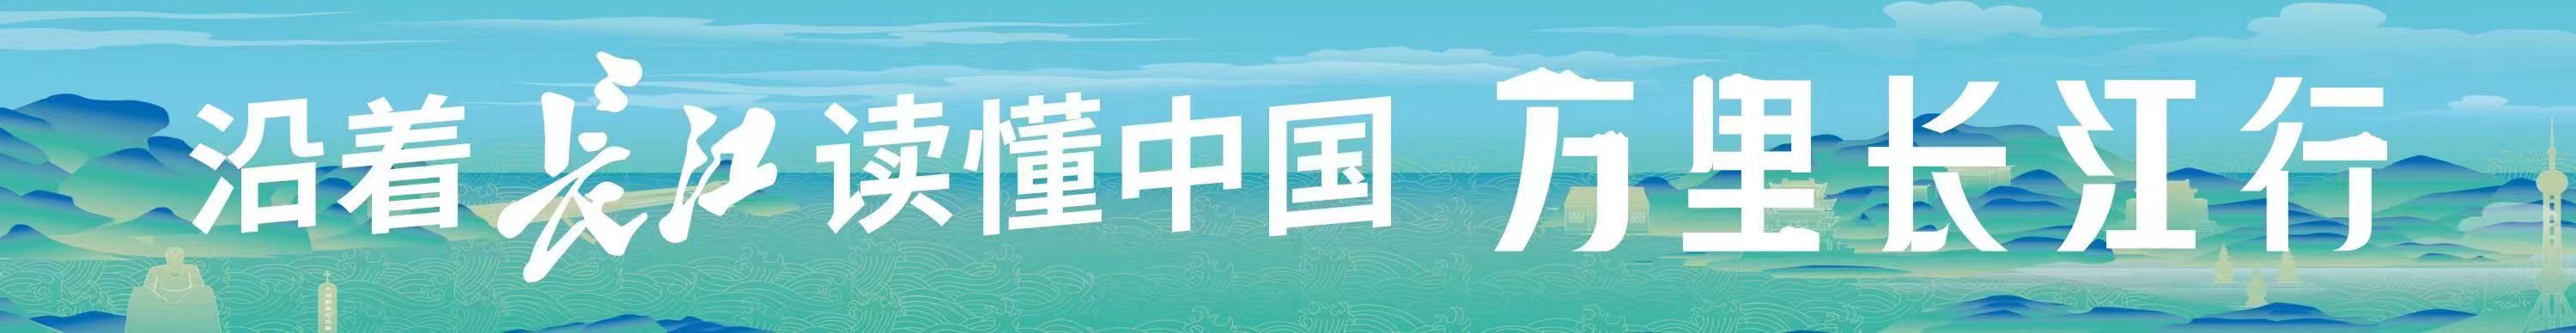 长江日报丨“万里长江行”探访江南三大名楼： 一条母亲河孕育三座中华文化地标